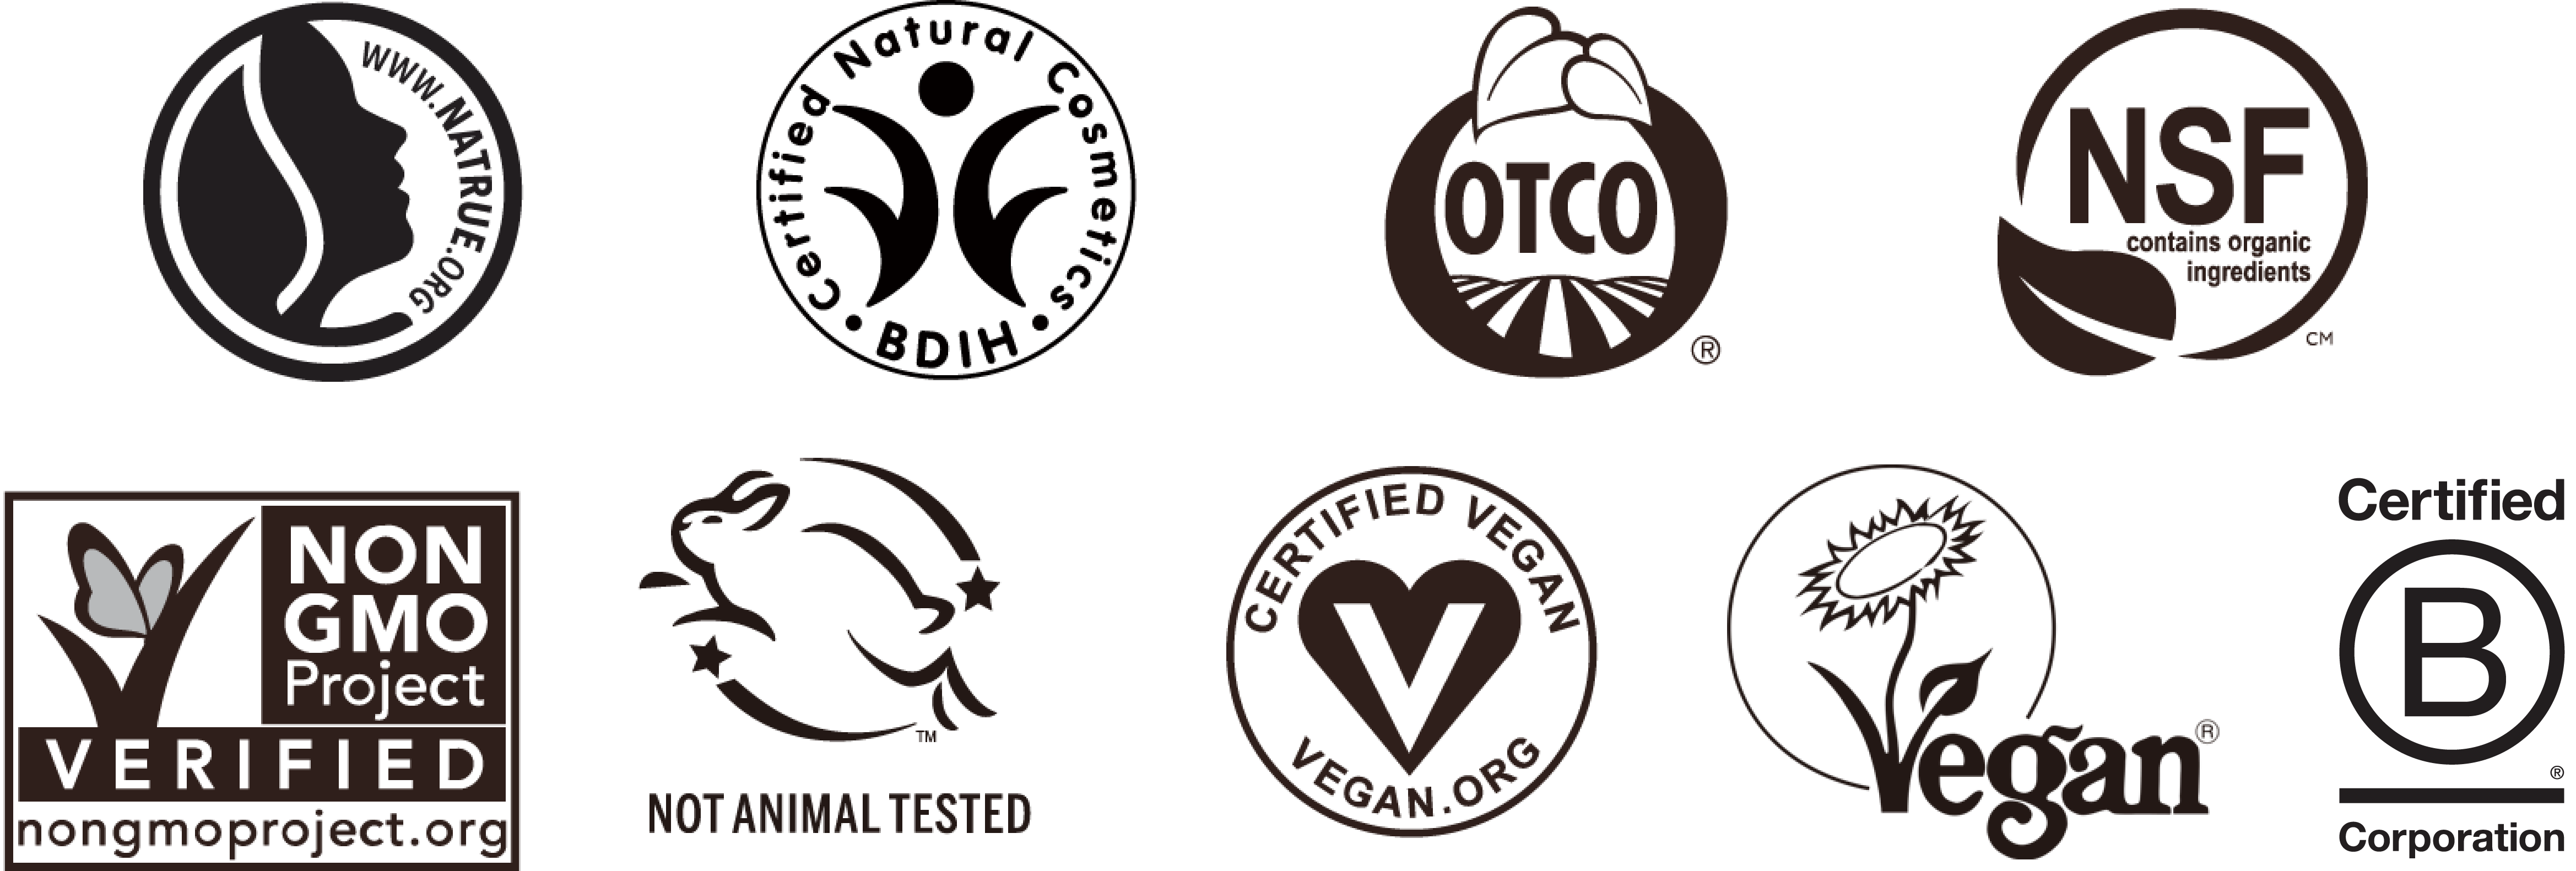 ドクターブロナー マジックソープが取得している認定・認証マーク。NATRUE、BDIH、Oregon Tilth Certified Organic、Non-GMO Project、fair for life、WFTO、Leaping Bunny、Vegan Action